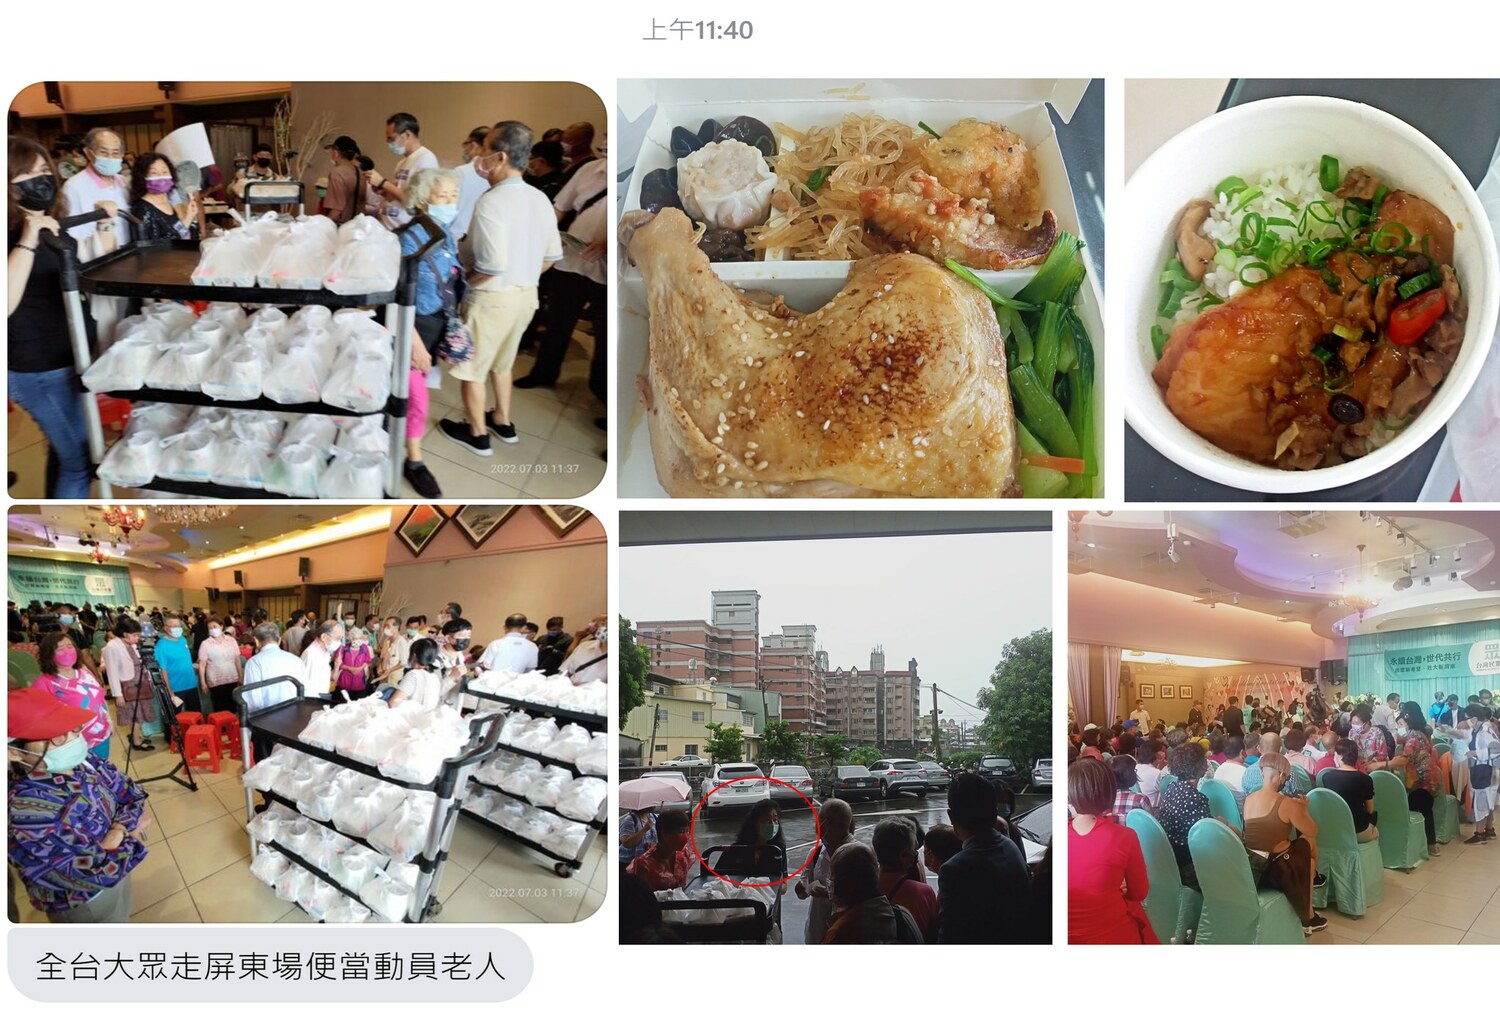 民眾黨全台大眾走周末來到屏東，大發雙主菜便當給民眾。   圖:劉宇臉書